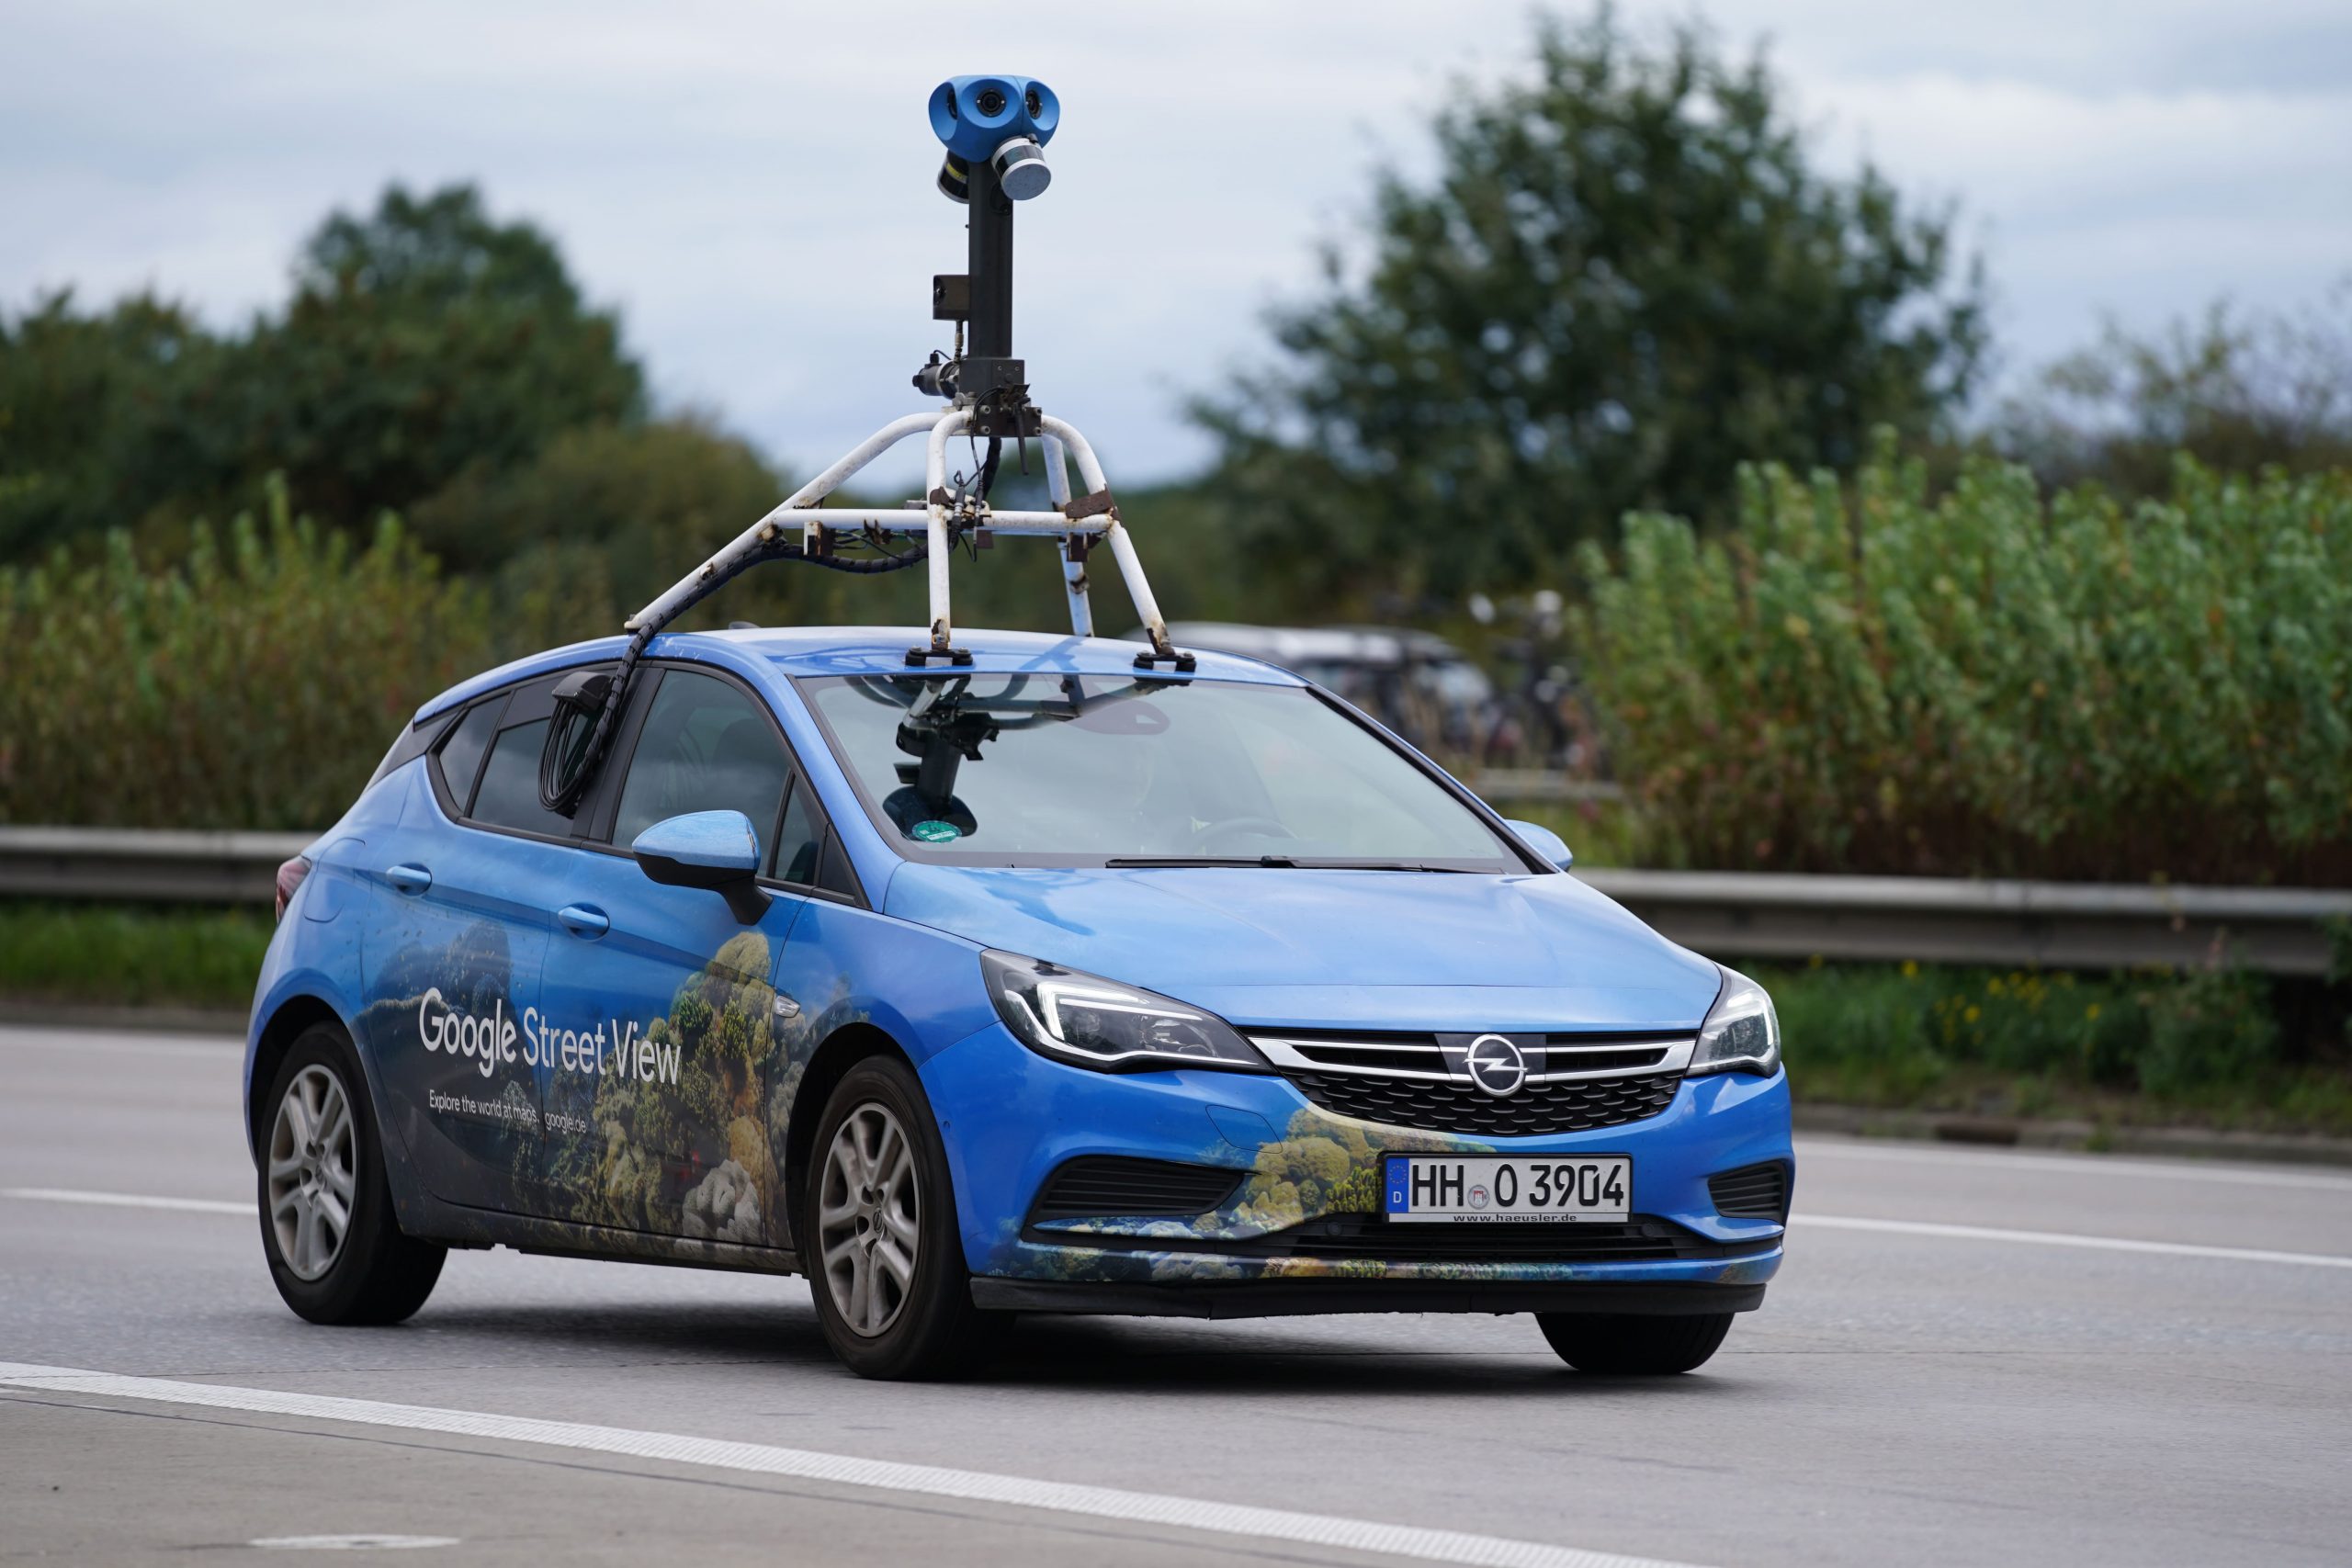 Google Streetview Fahrzeug mit Kamera auf dem Dach fährt auf einer Straße